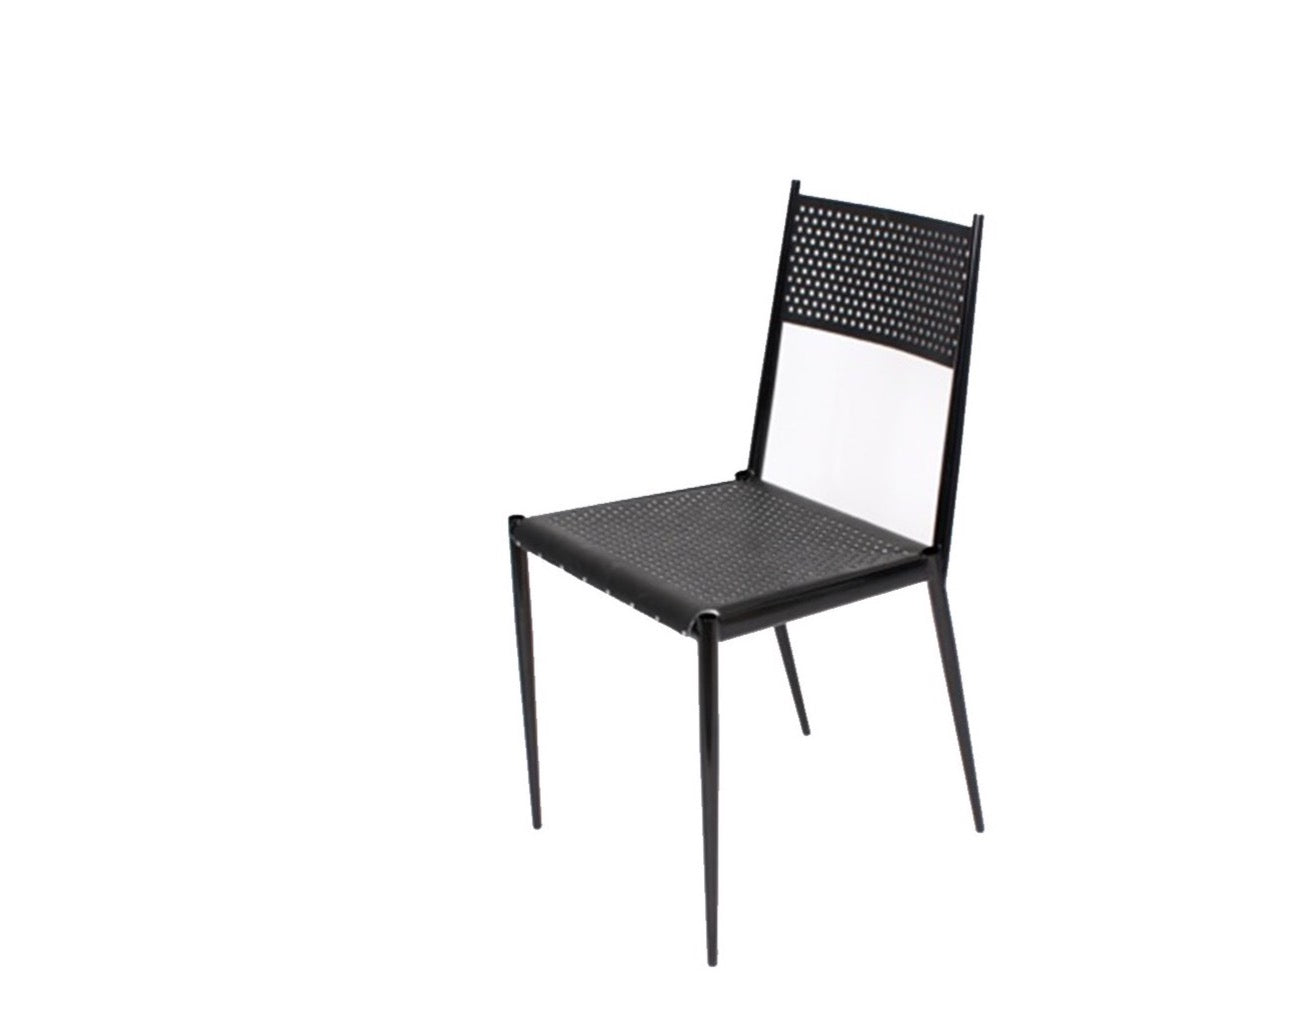 Acciaio Chair